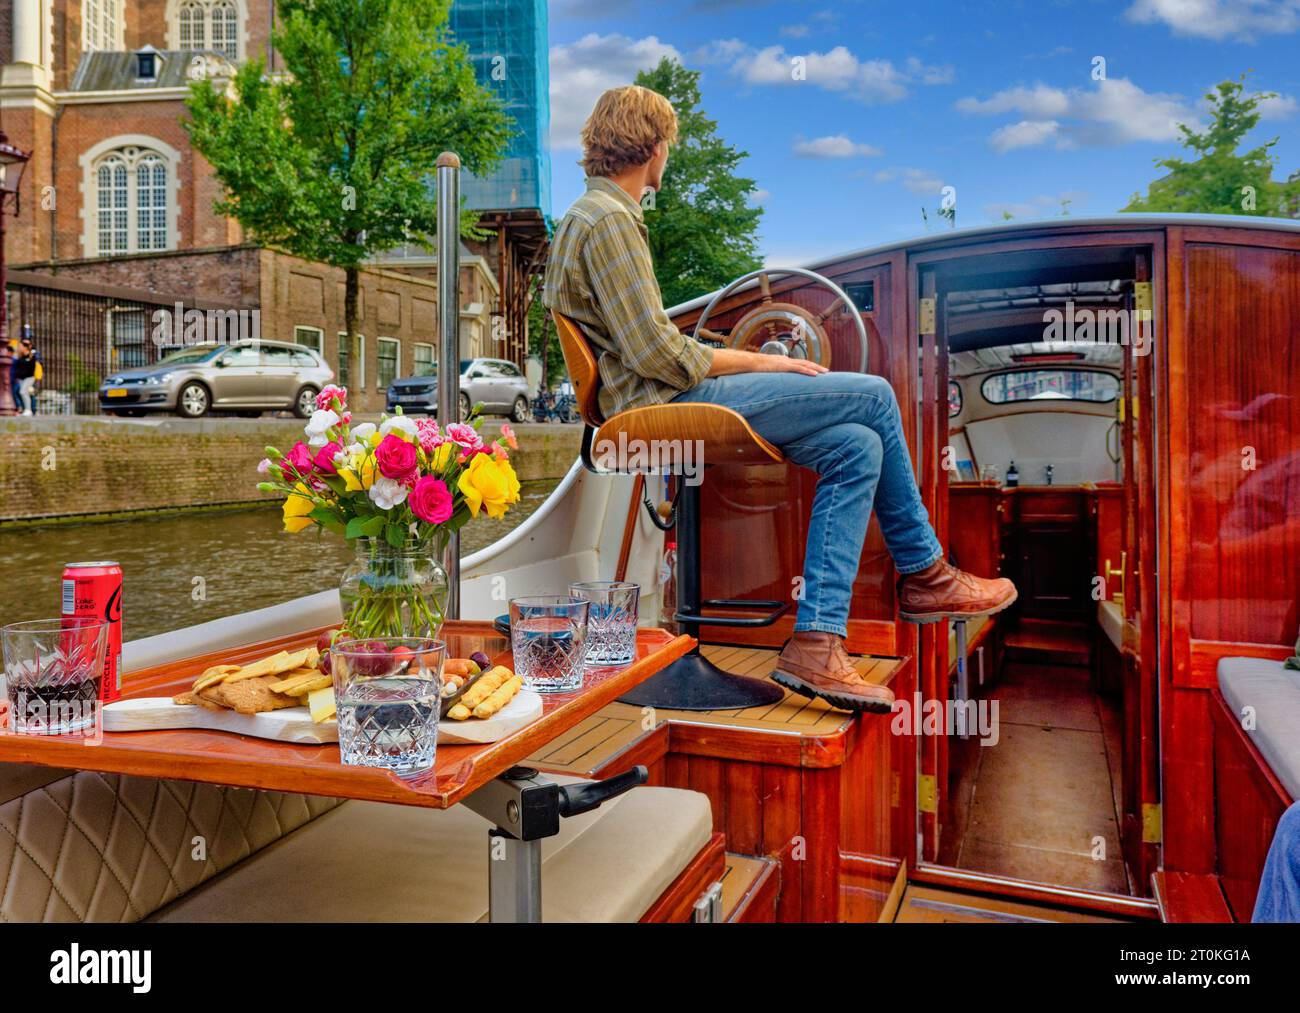 AMSTERDAM, NIEDERLANDE - 24. August 2023: Amsterdam ist die Hauptstadt der Niederlande, bekannt für sein künstlerisches Erbe, sein ausgeklügeltes Kanalsystem und seine enge Hu Stockfoto